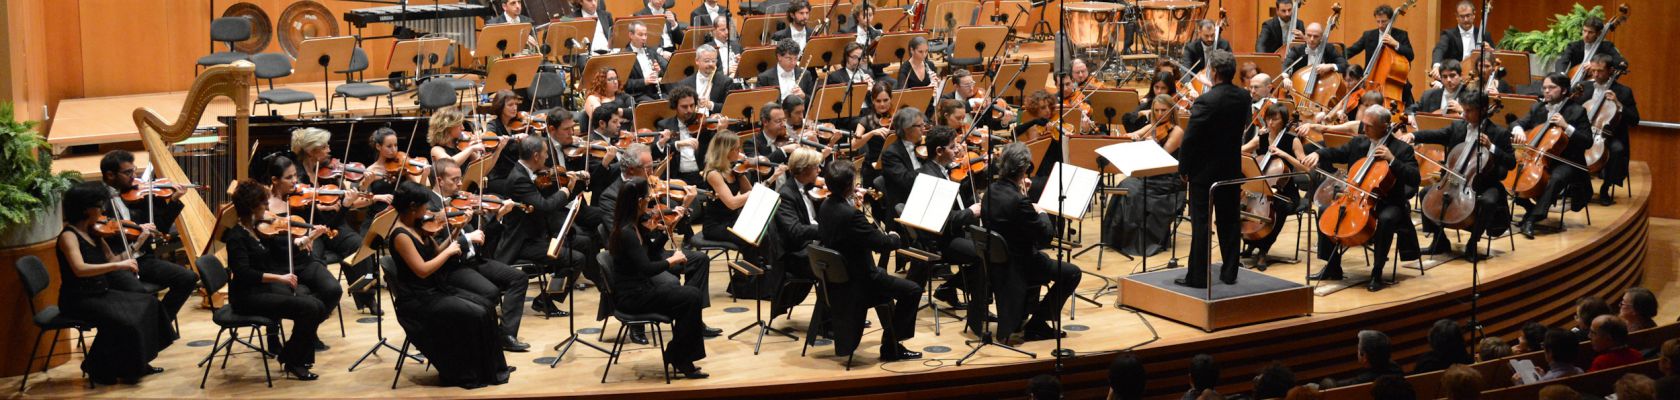 Haydn orchestra